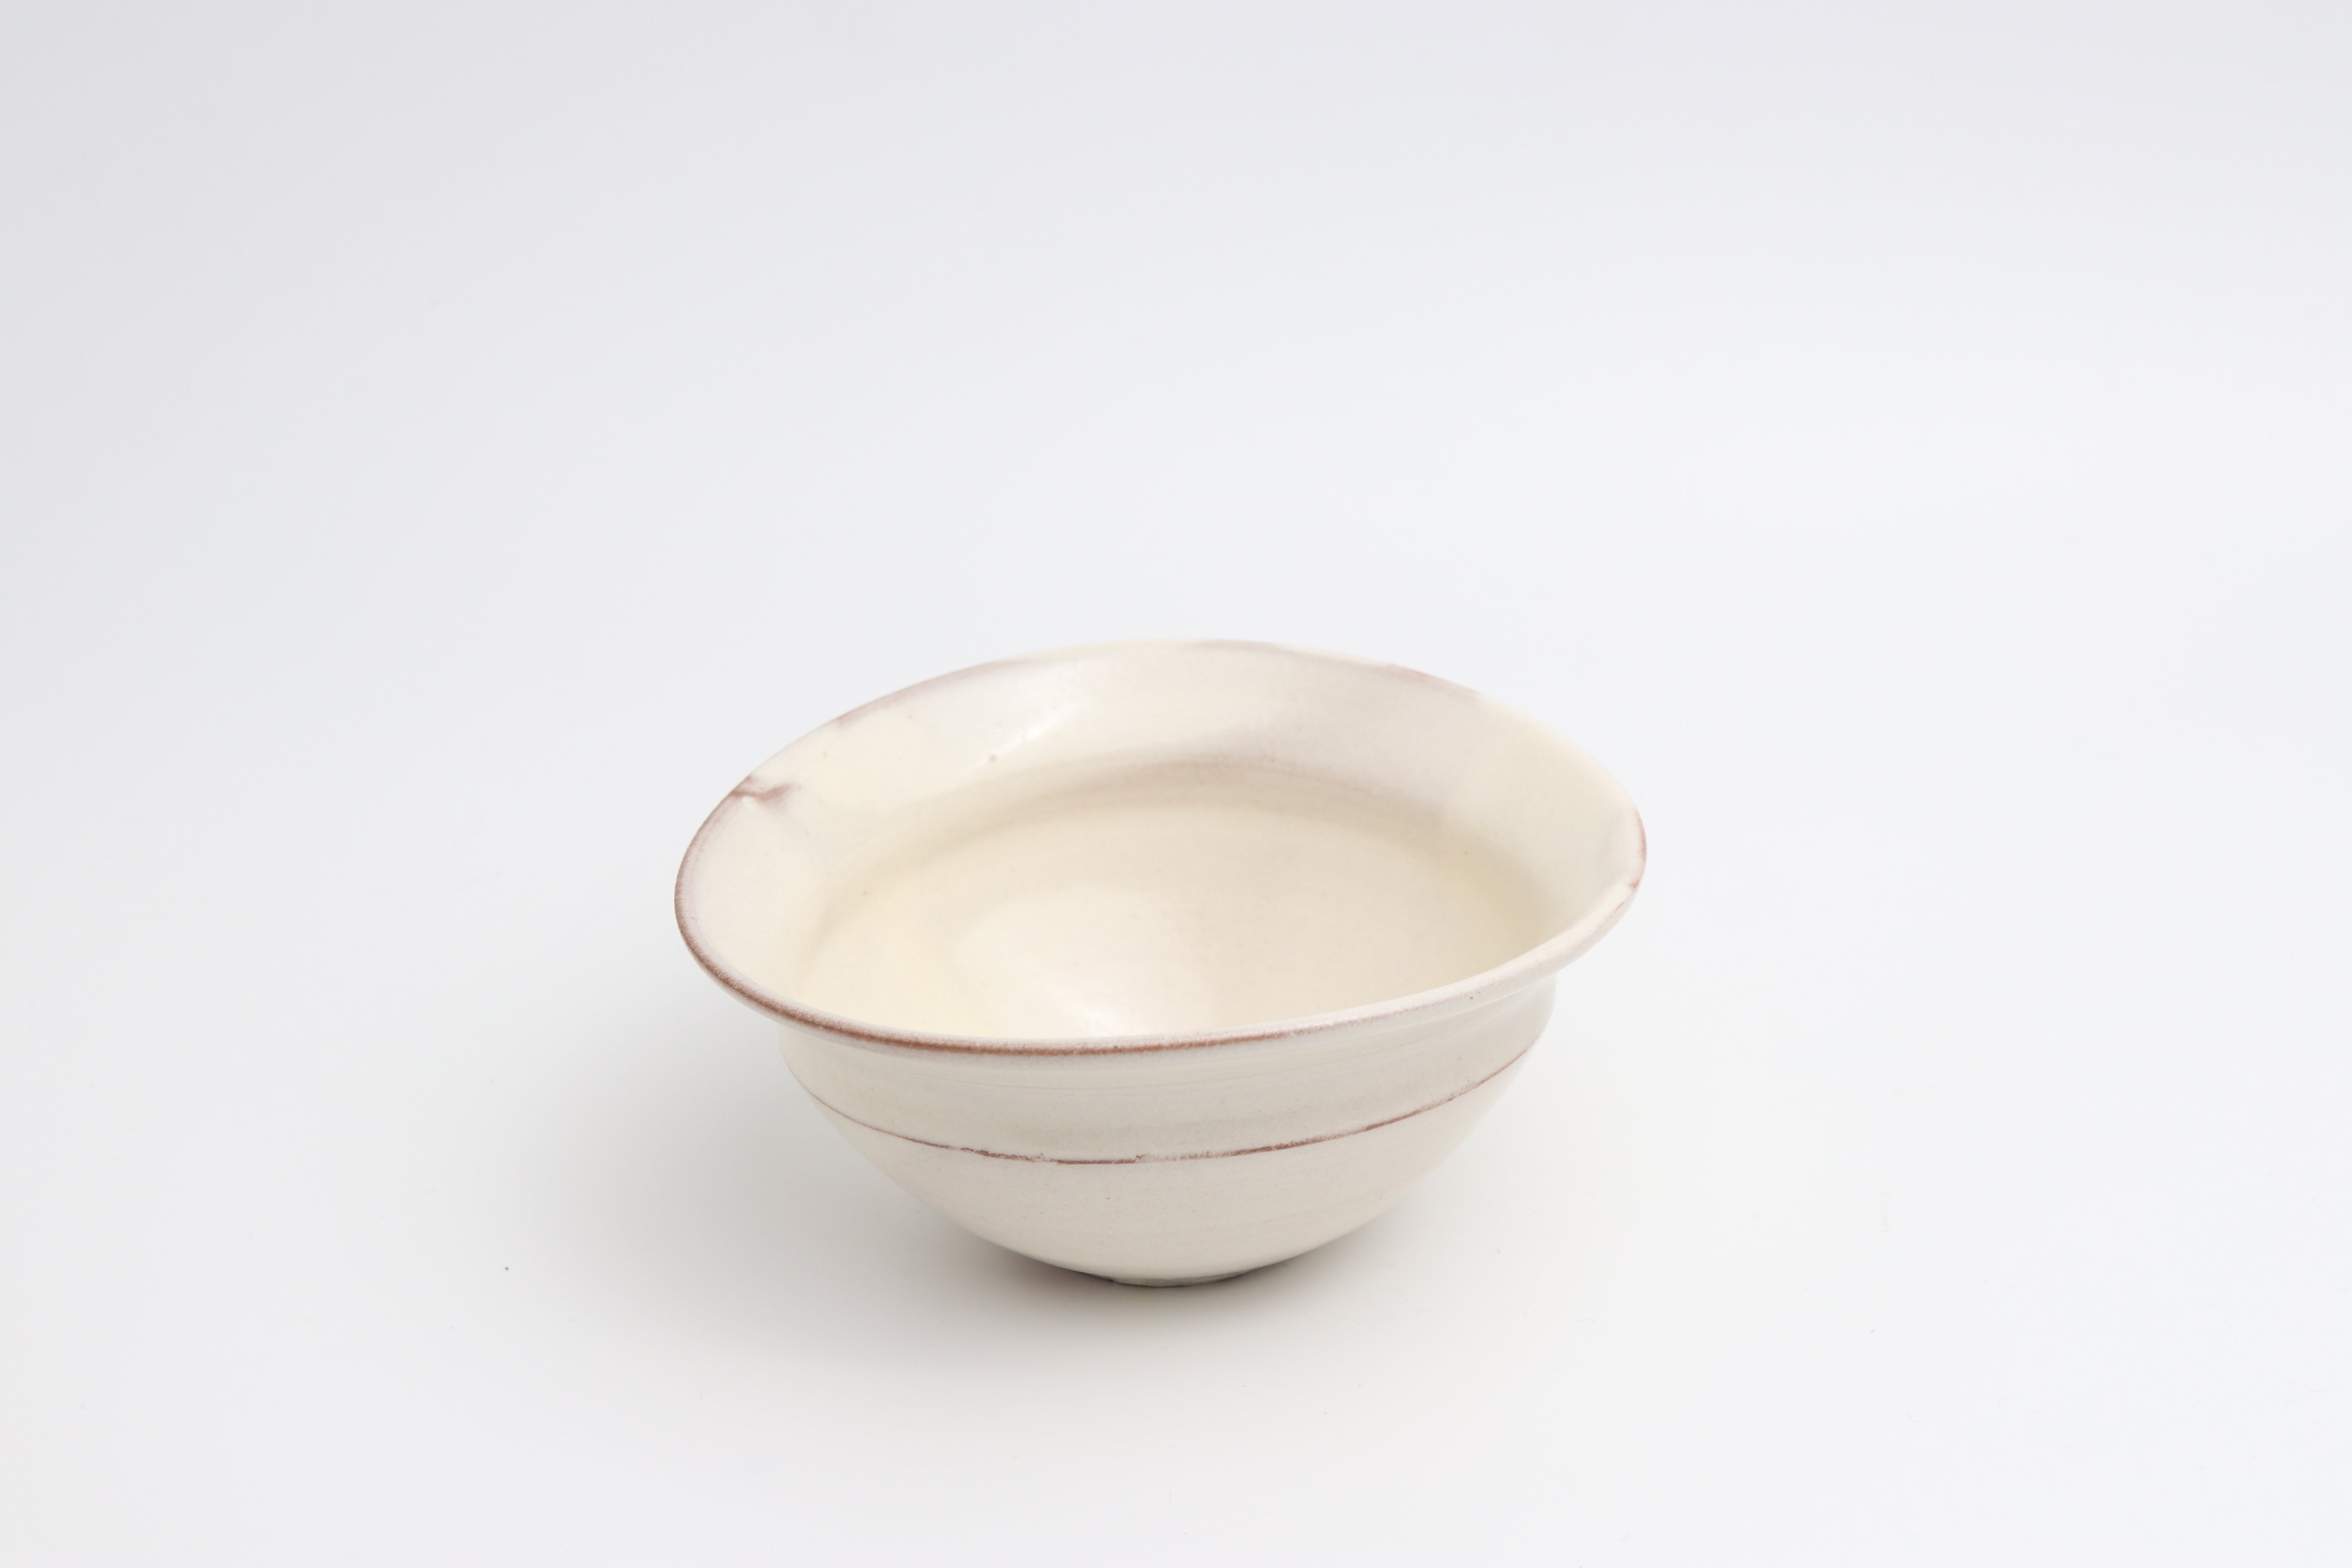 Fuminari Araga side bowl